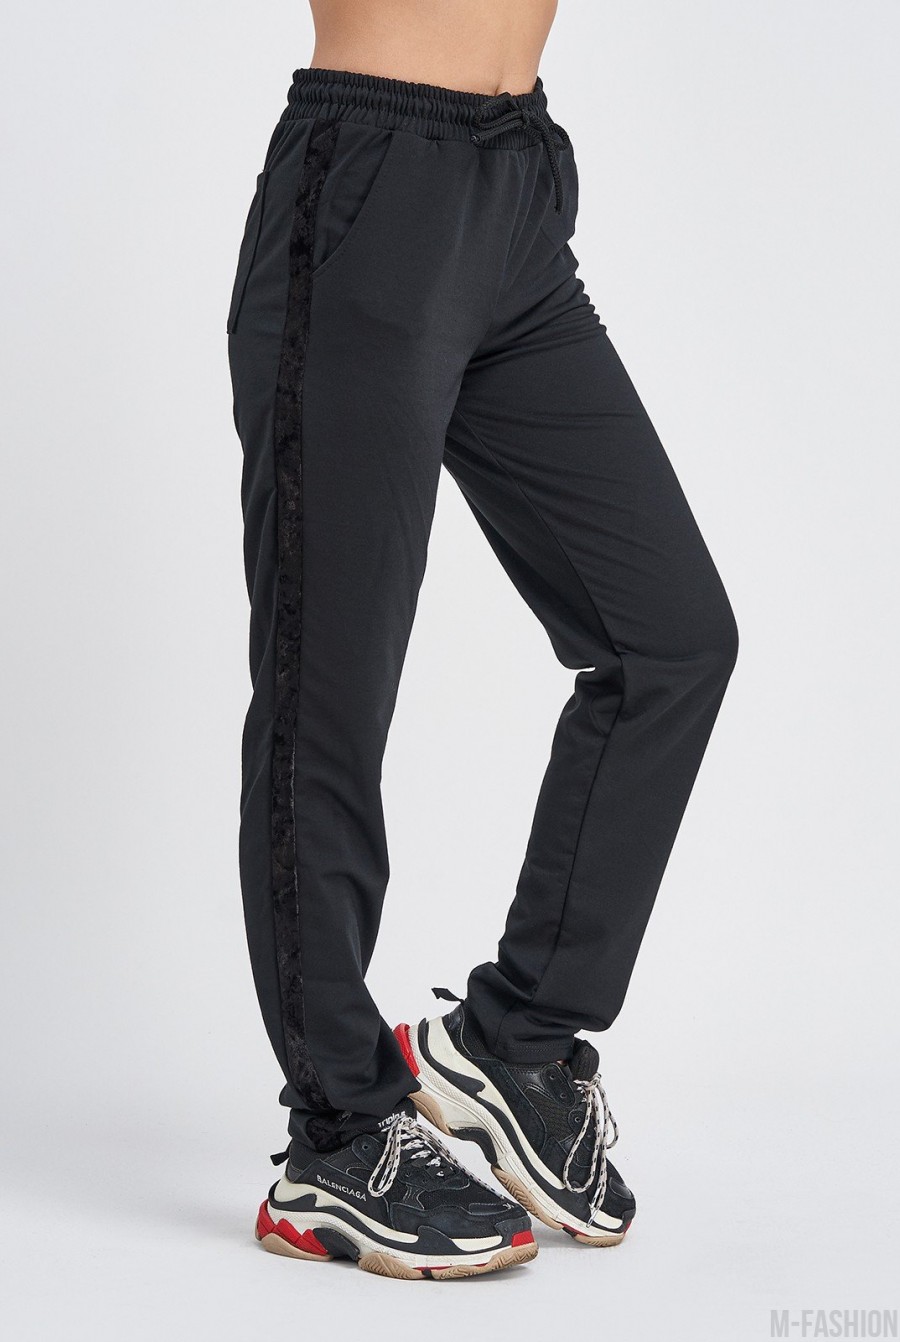 Черные трикотажные штаны с велюровыми лампасами- Фото 2